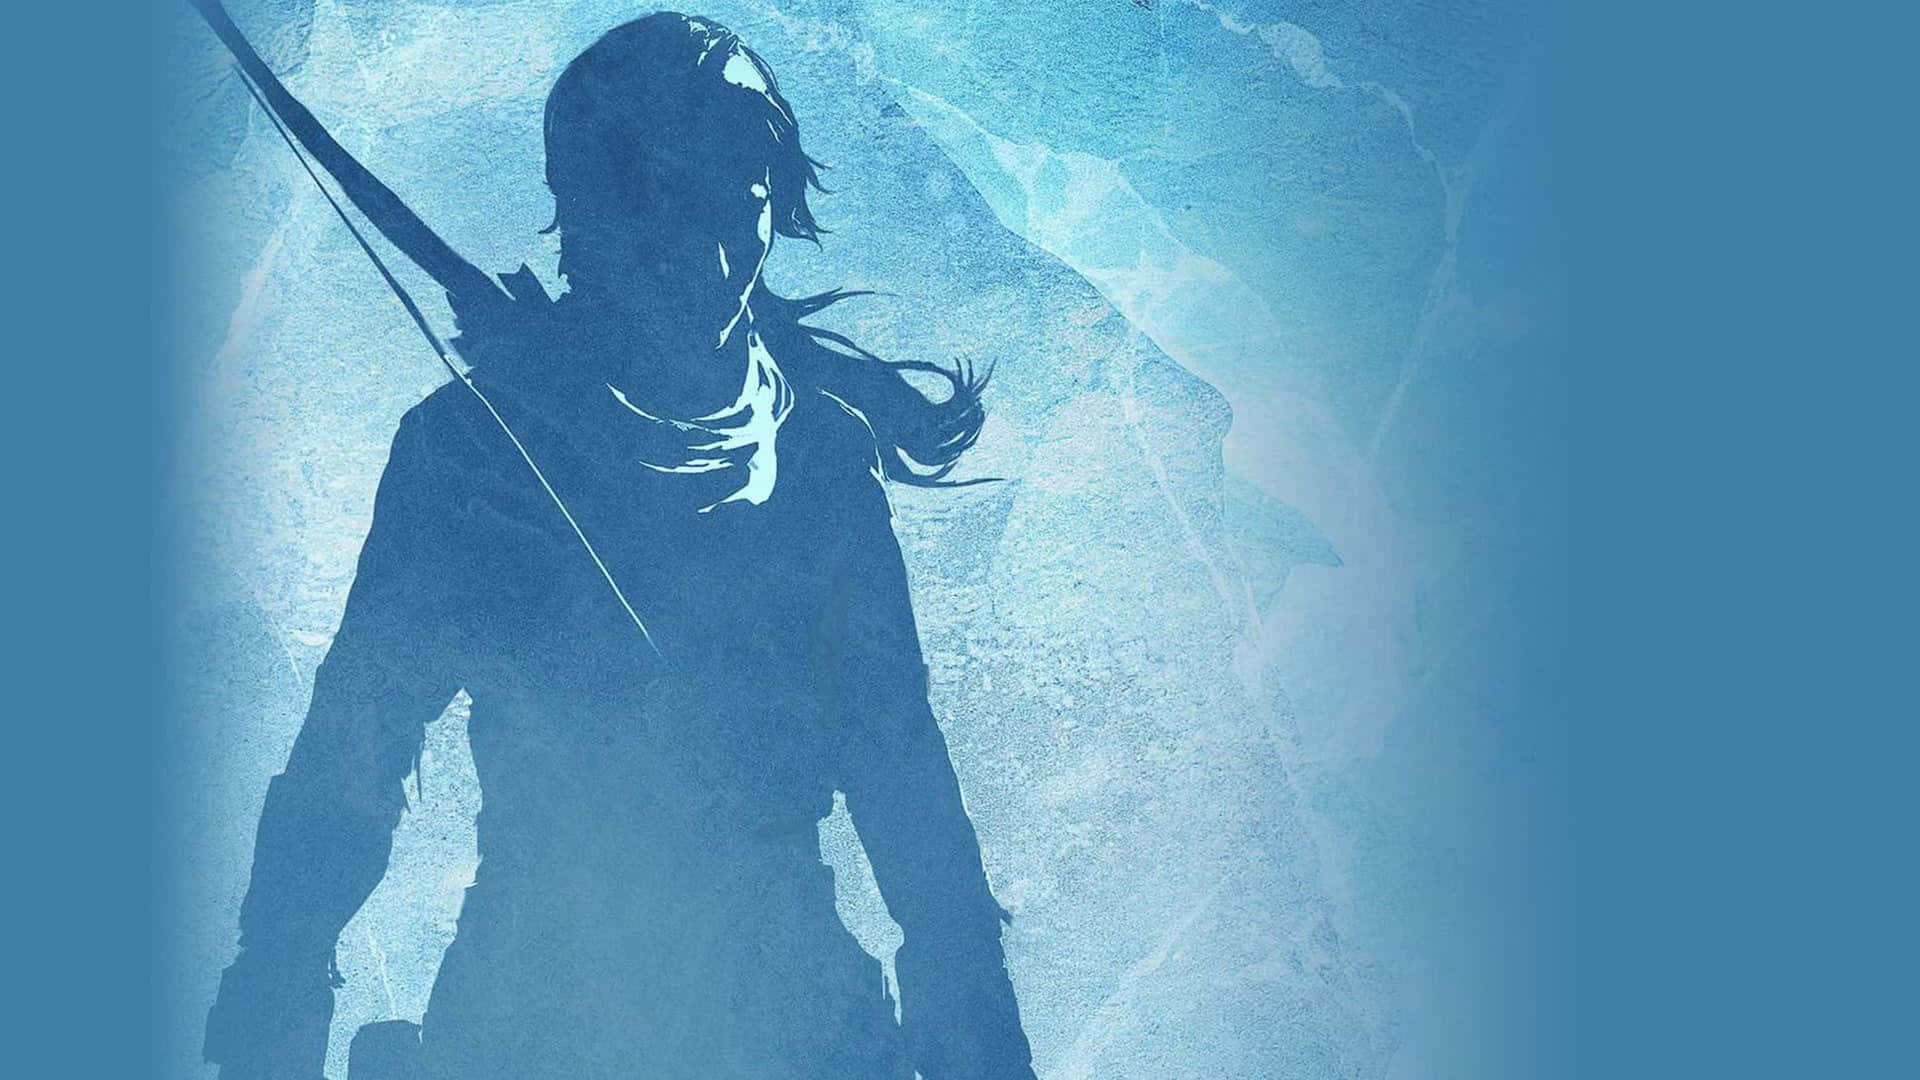 Laracroft Är Redo Att Erövra Världen I Shadow Of The Tomb Raider.